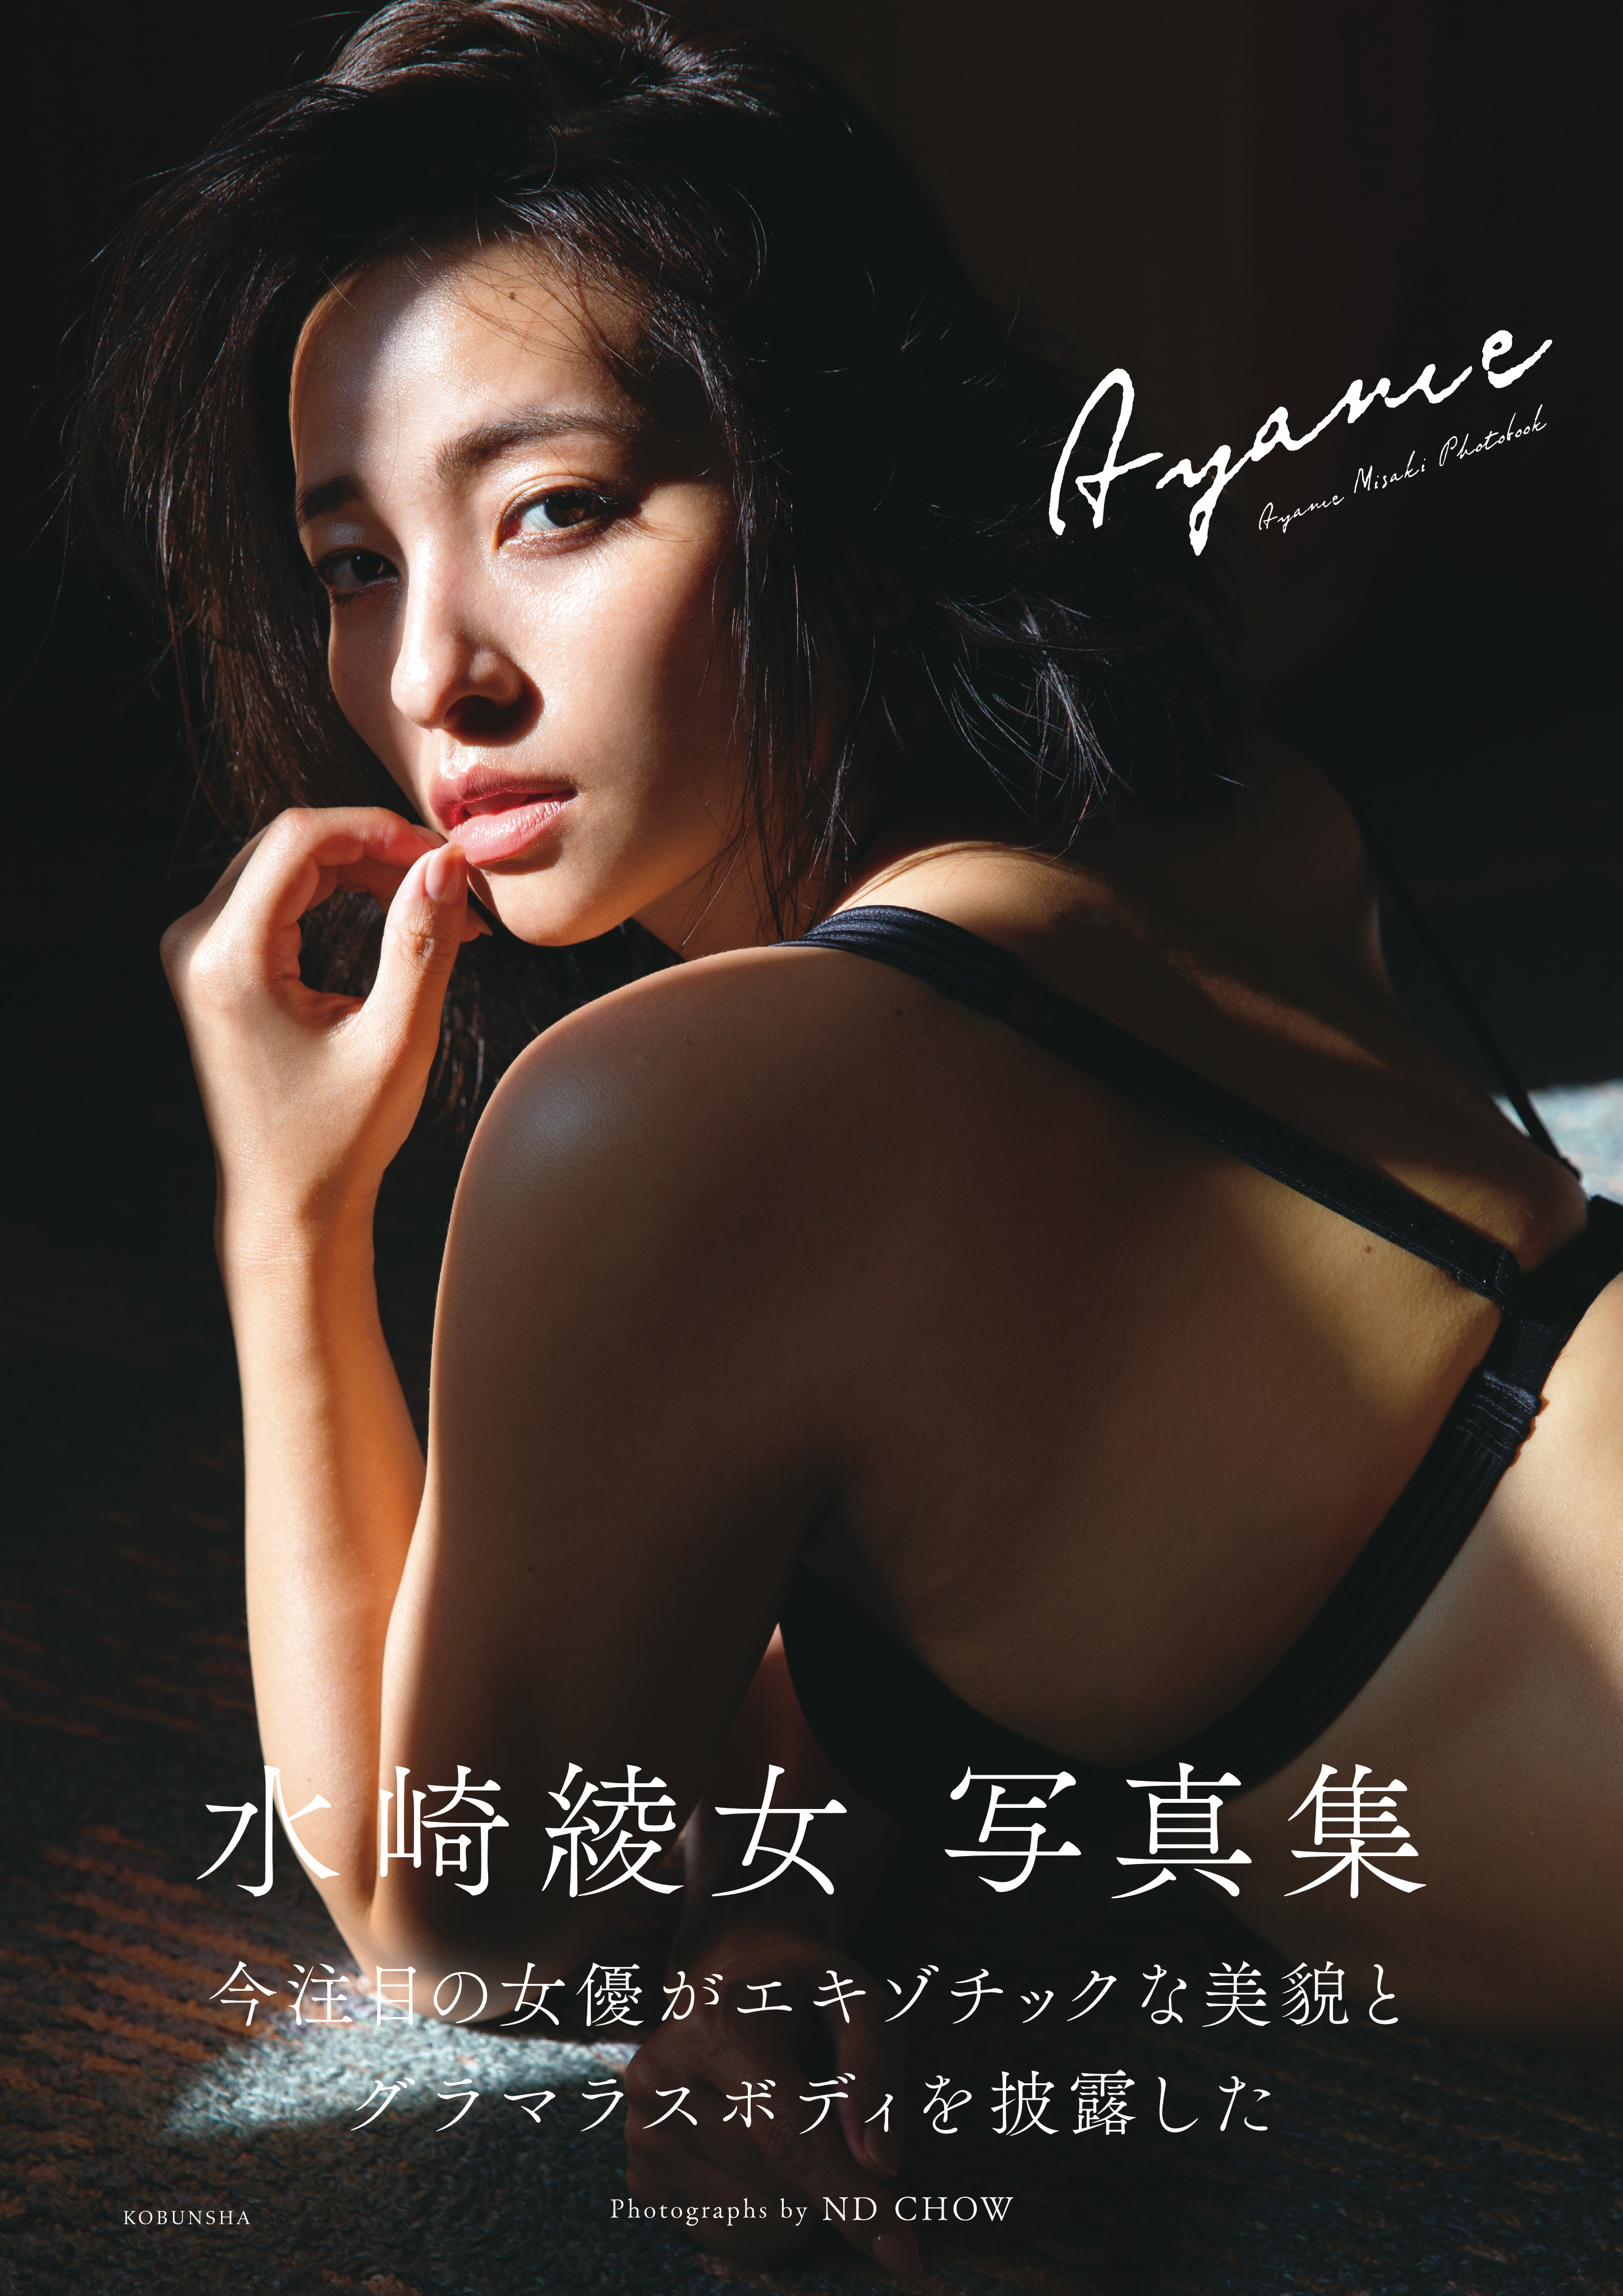 水崎綾女 写真集 『Ayame』